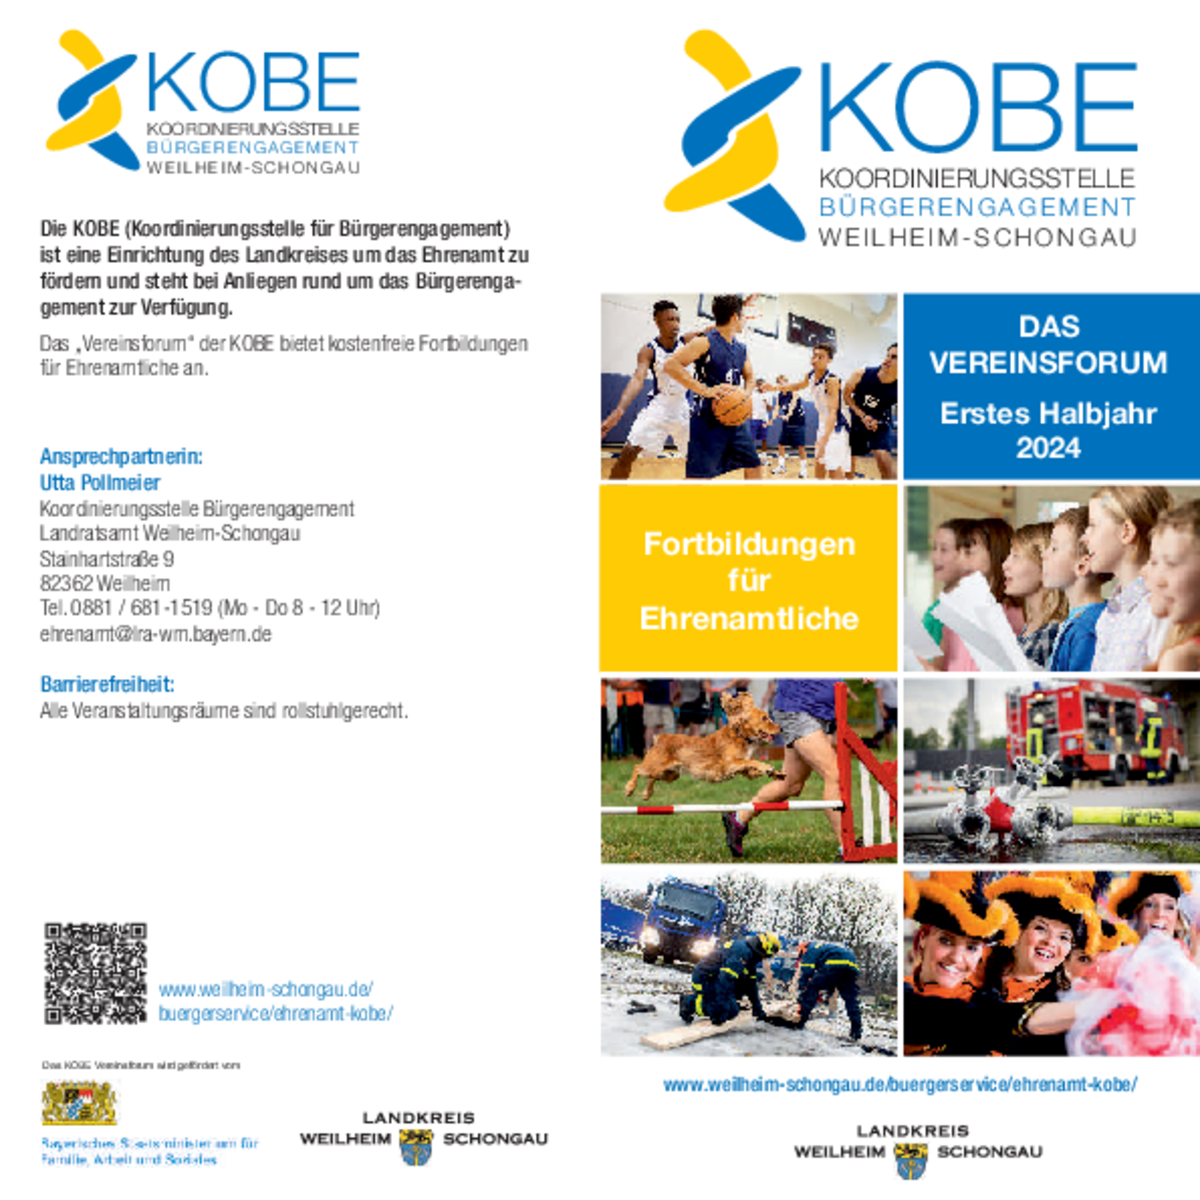 KOBE_Vereinsforum_Programm 2024